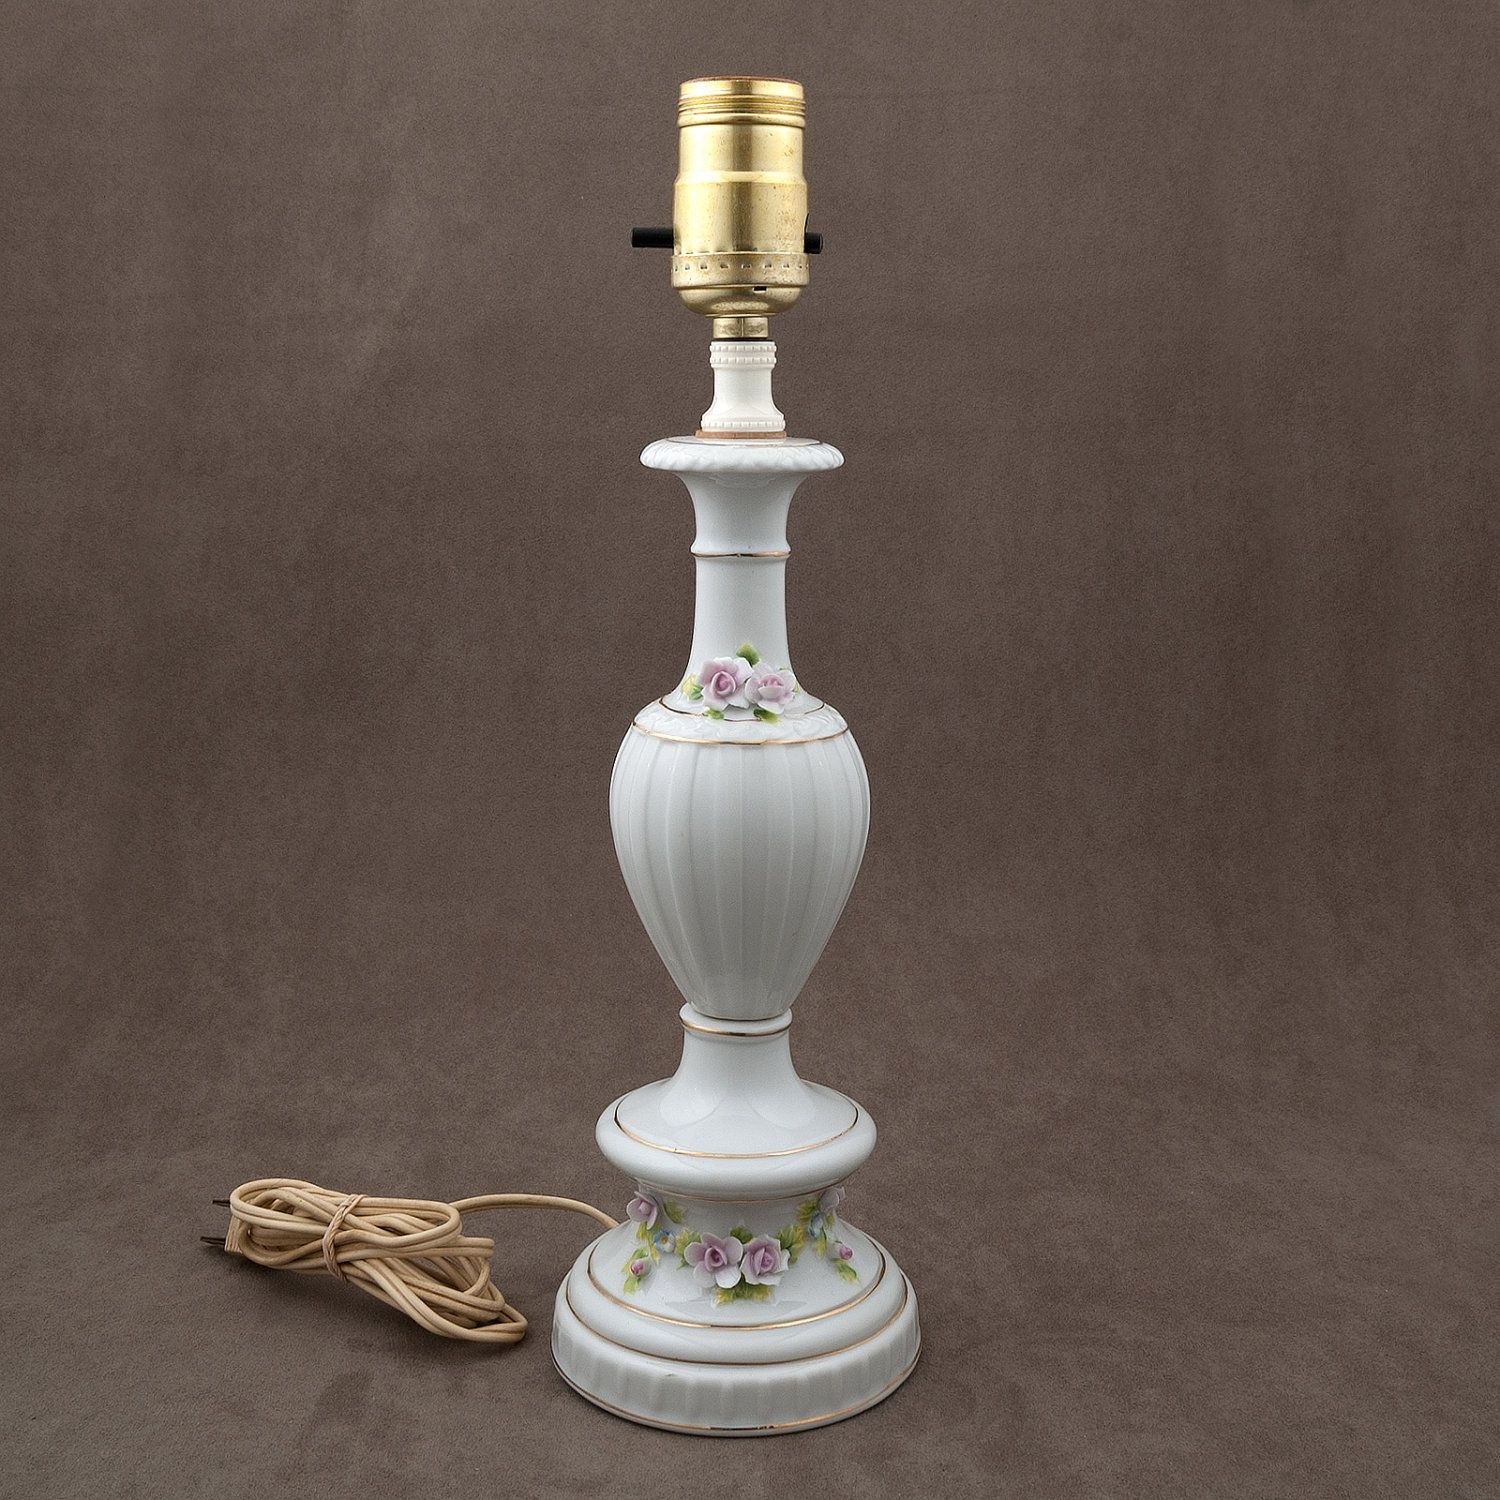 Vintage porcelain rose lamp made in japan gold trimmed